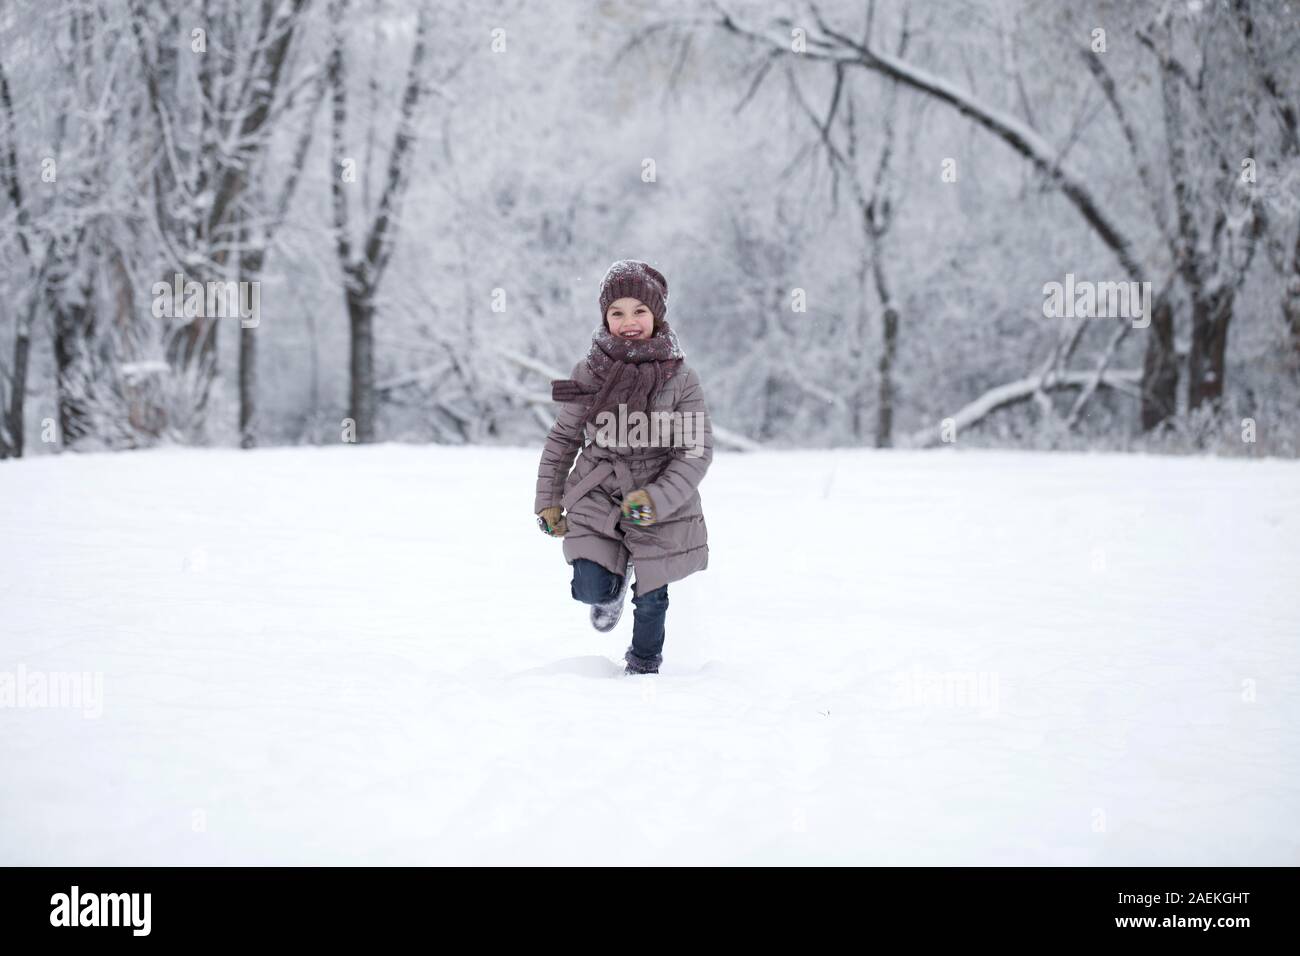 Fille dans des vêtements d'hiver court à travers prés enneigés en hiver Banque D'Images